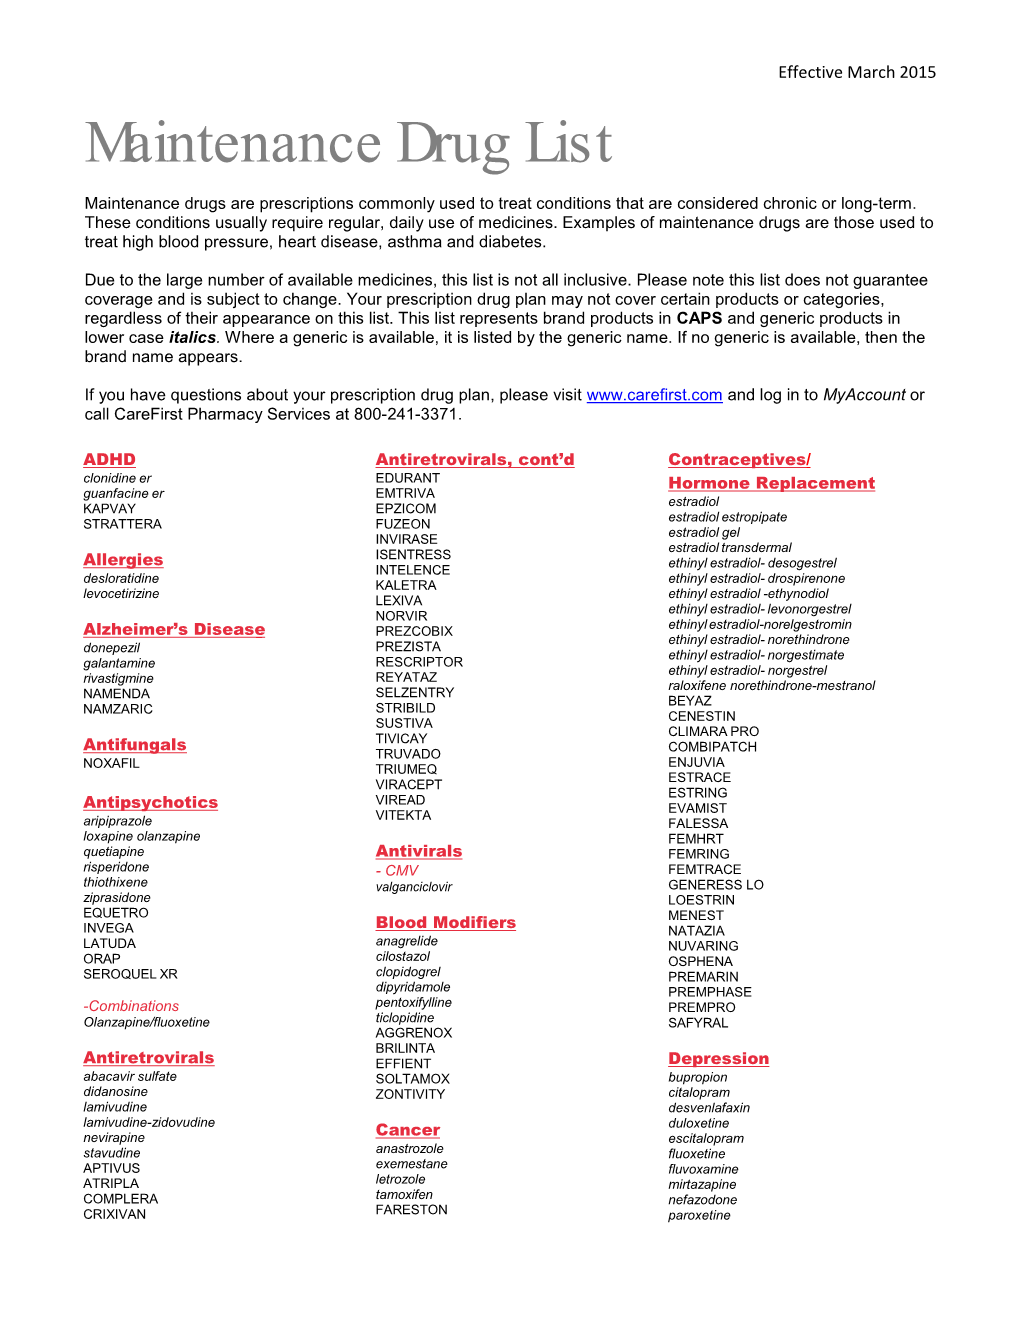 Maintenance Drug List